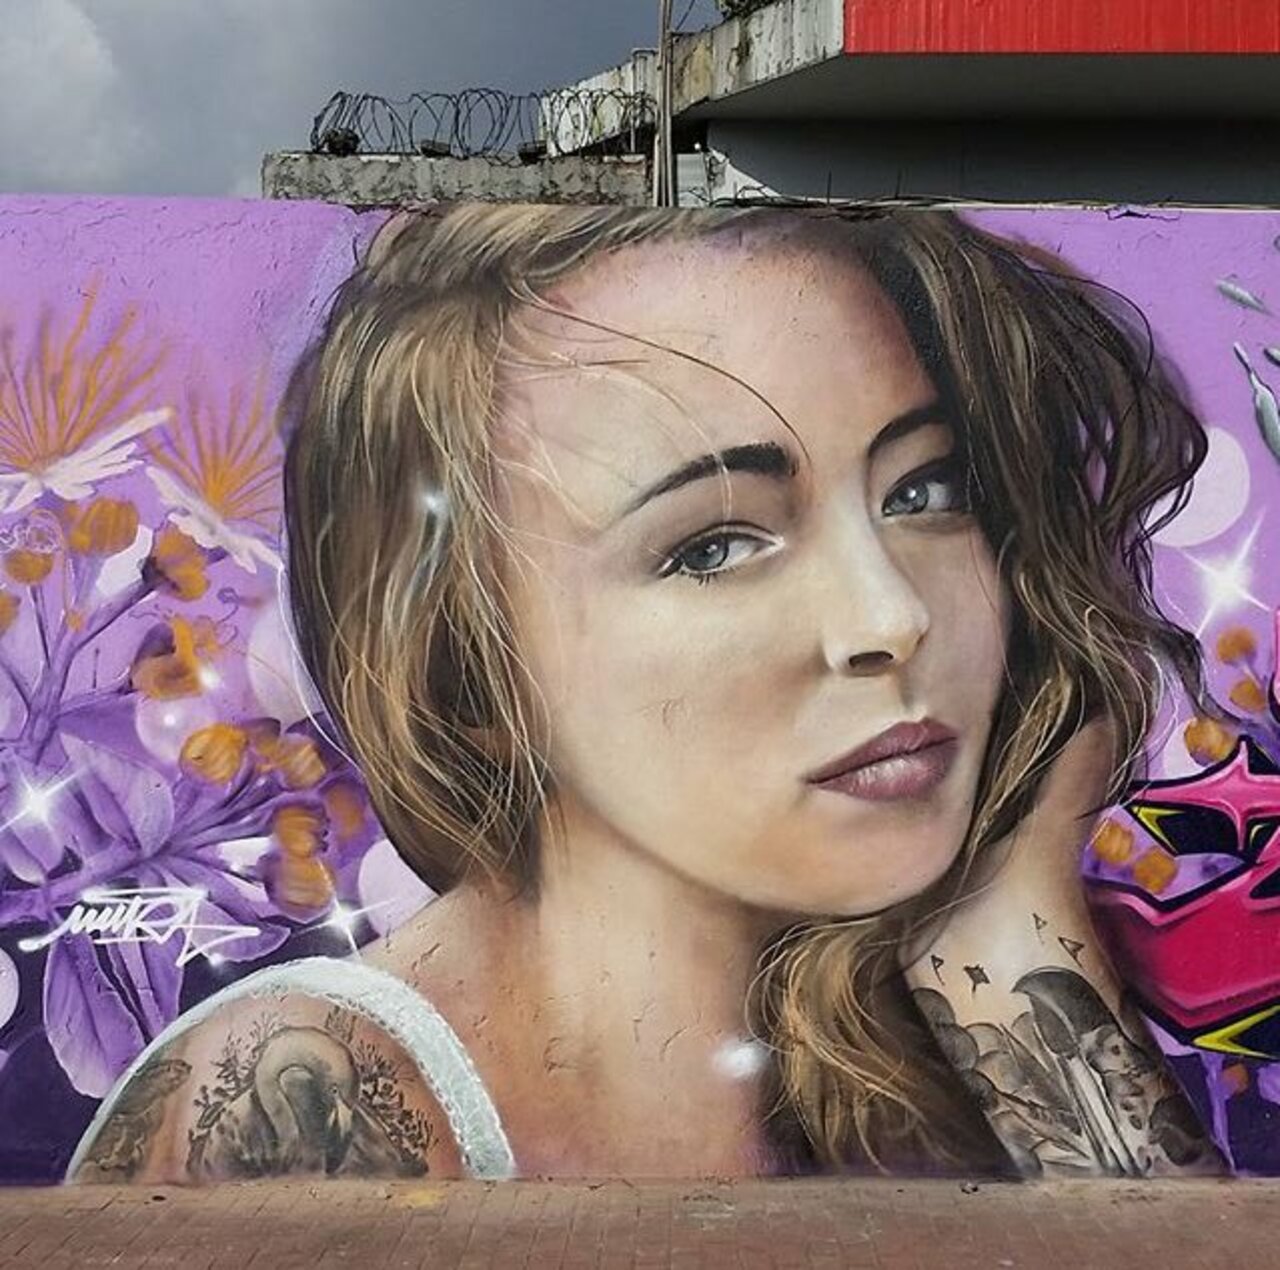 New Street Art by Mantarea 

#art #graffiti #mural #streetart https://t.co/U6prbhSkna